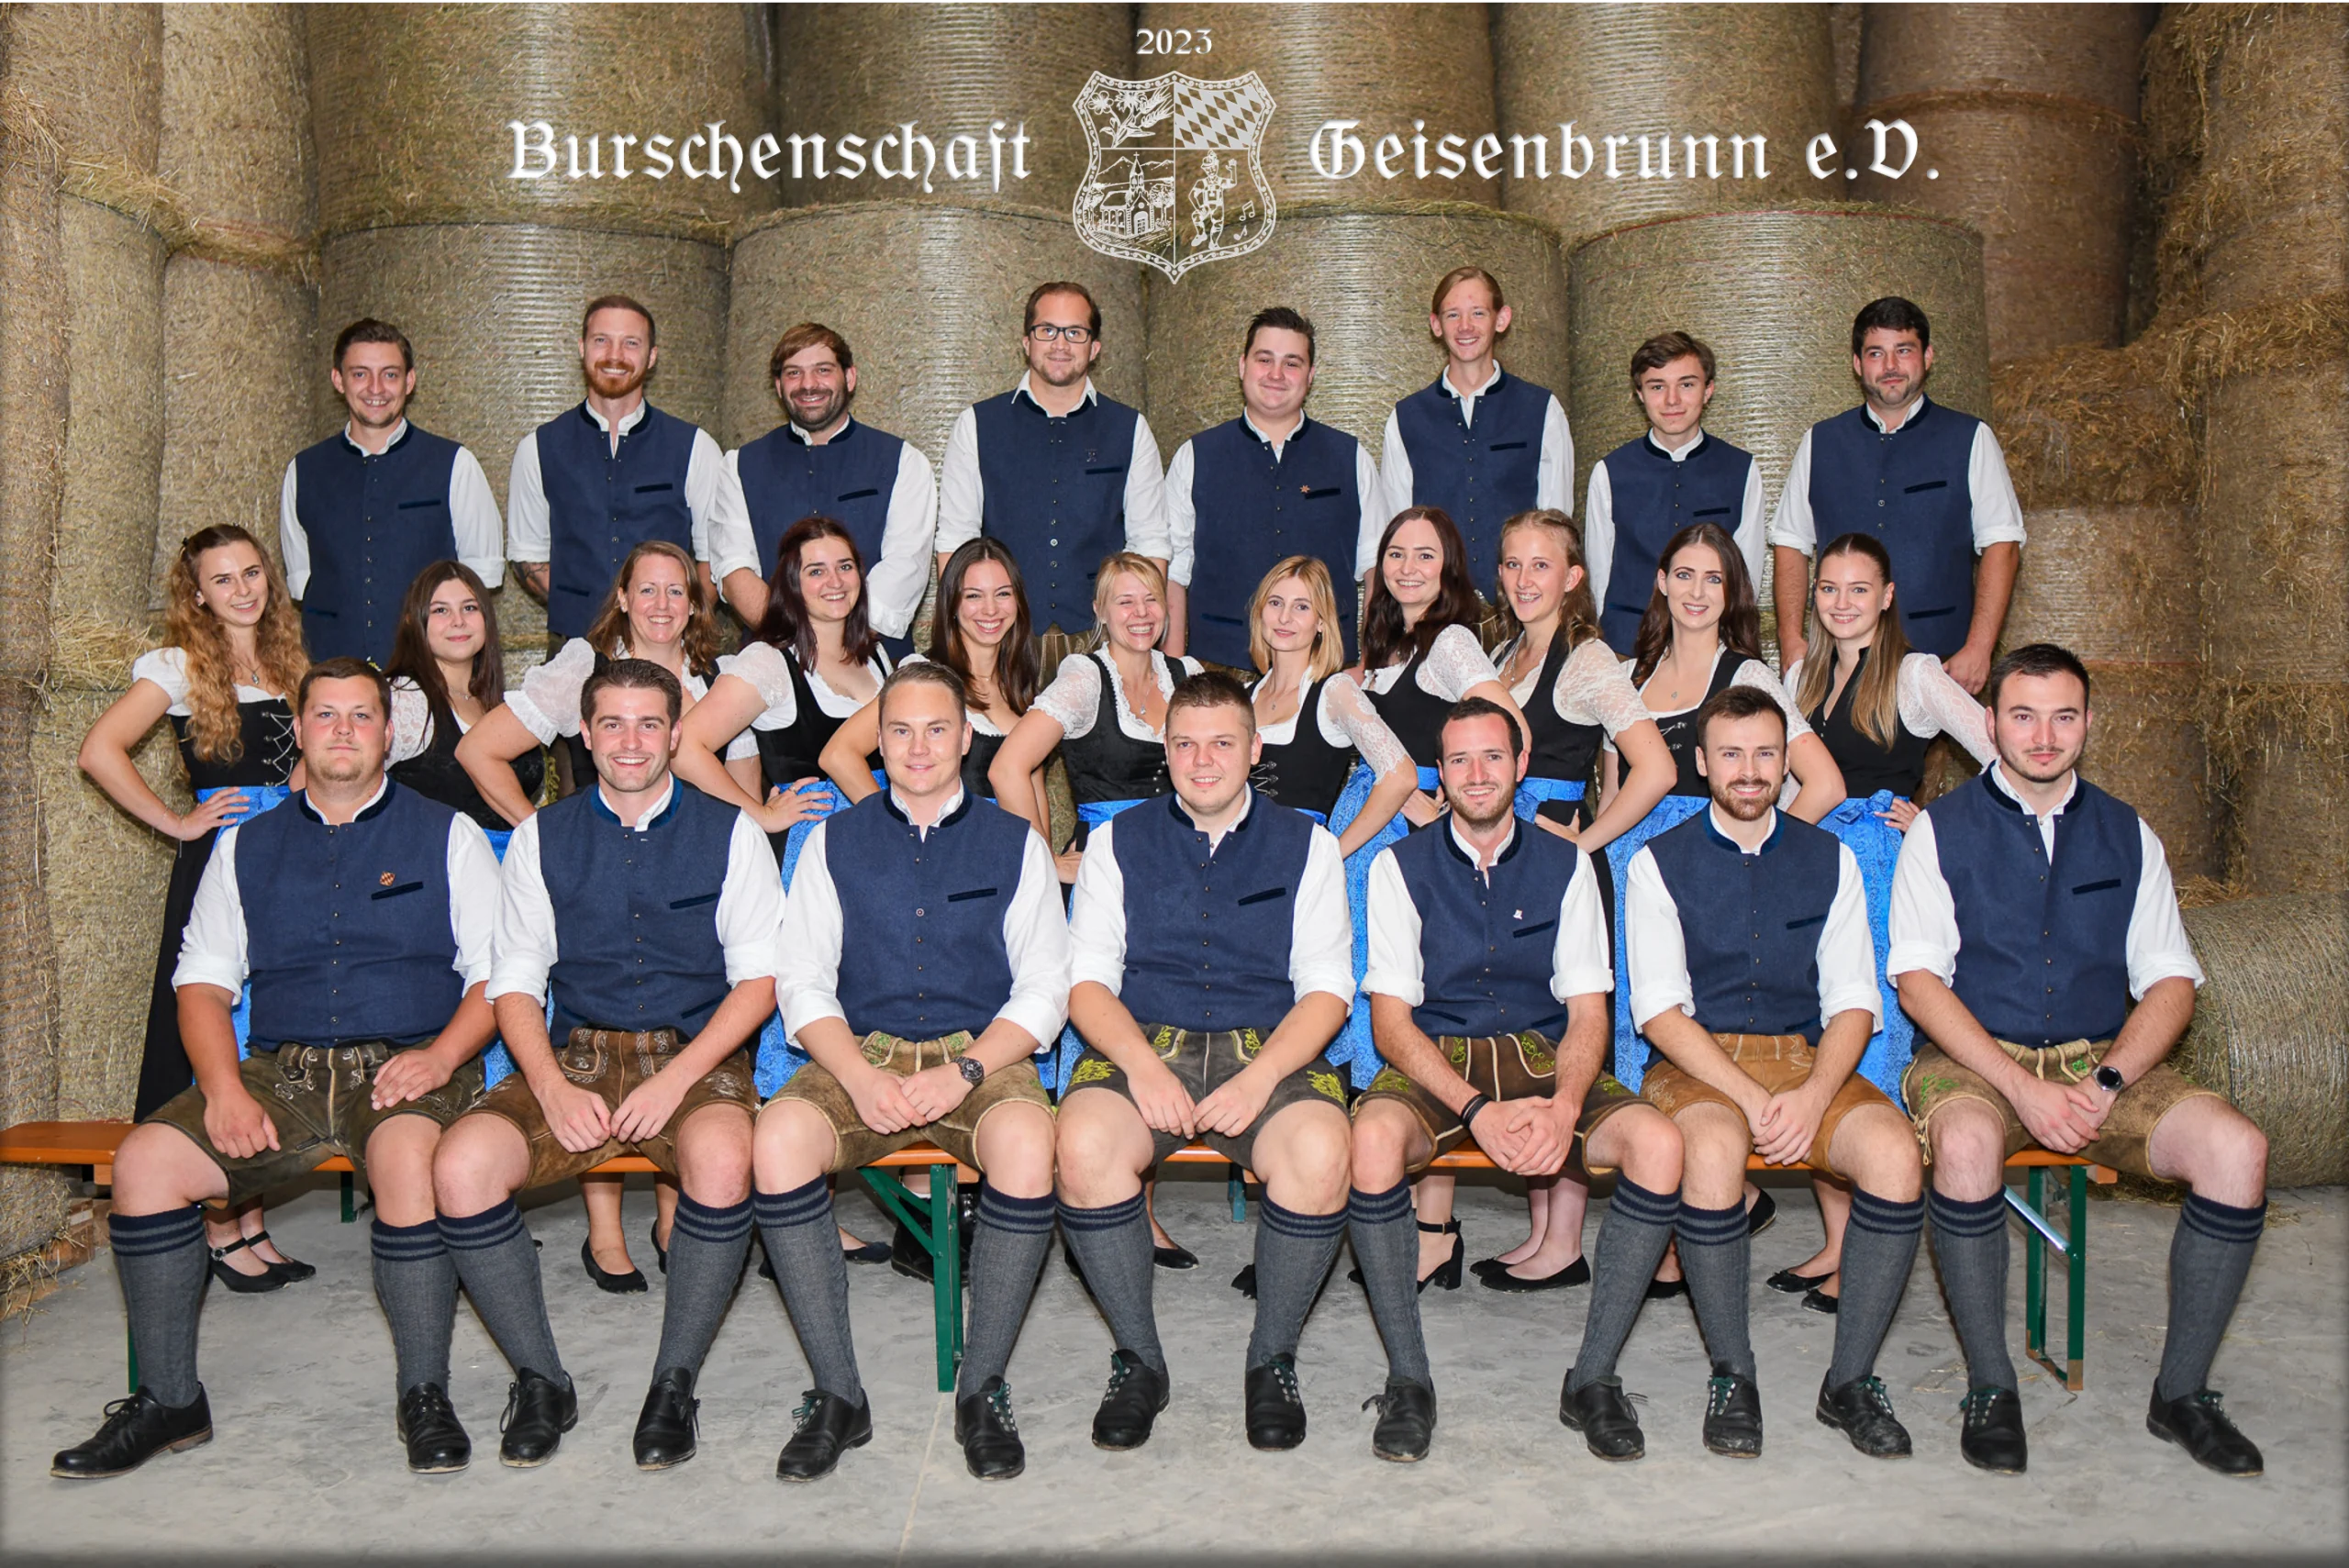 Burschenschaft Geisenbrunn e.V. Mitgliederfoto 2023